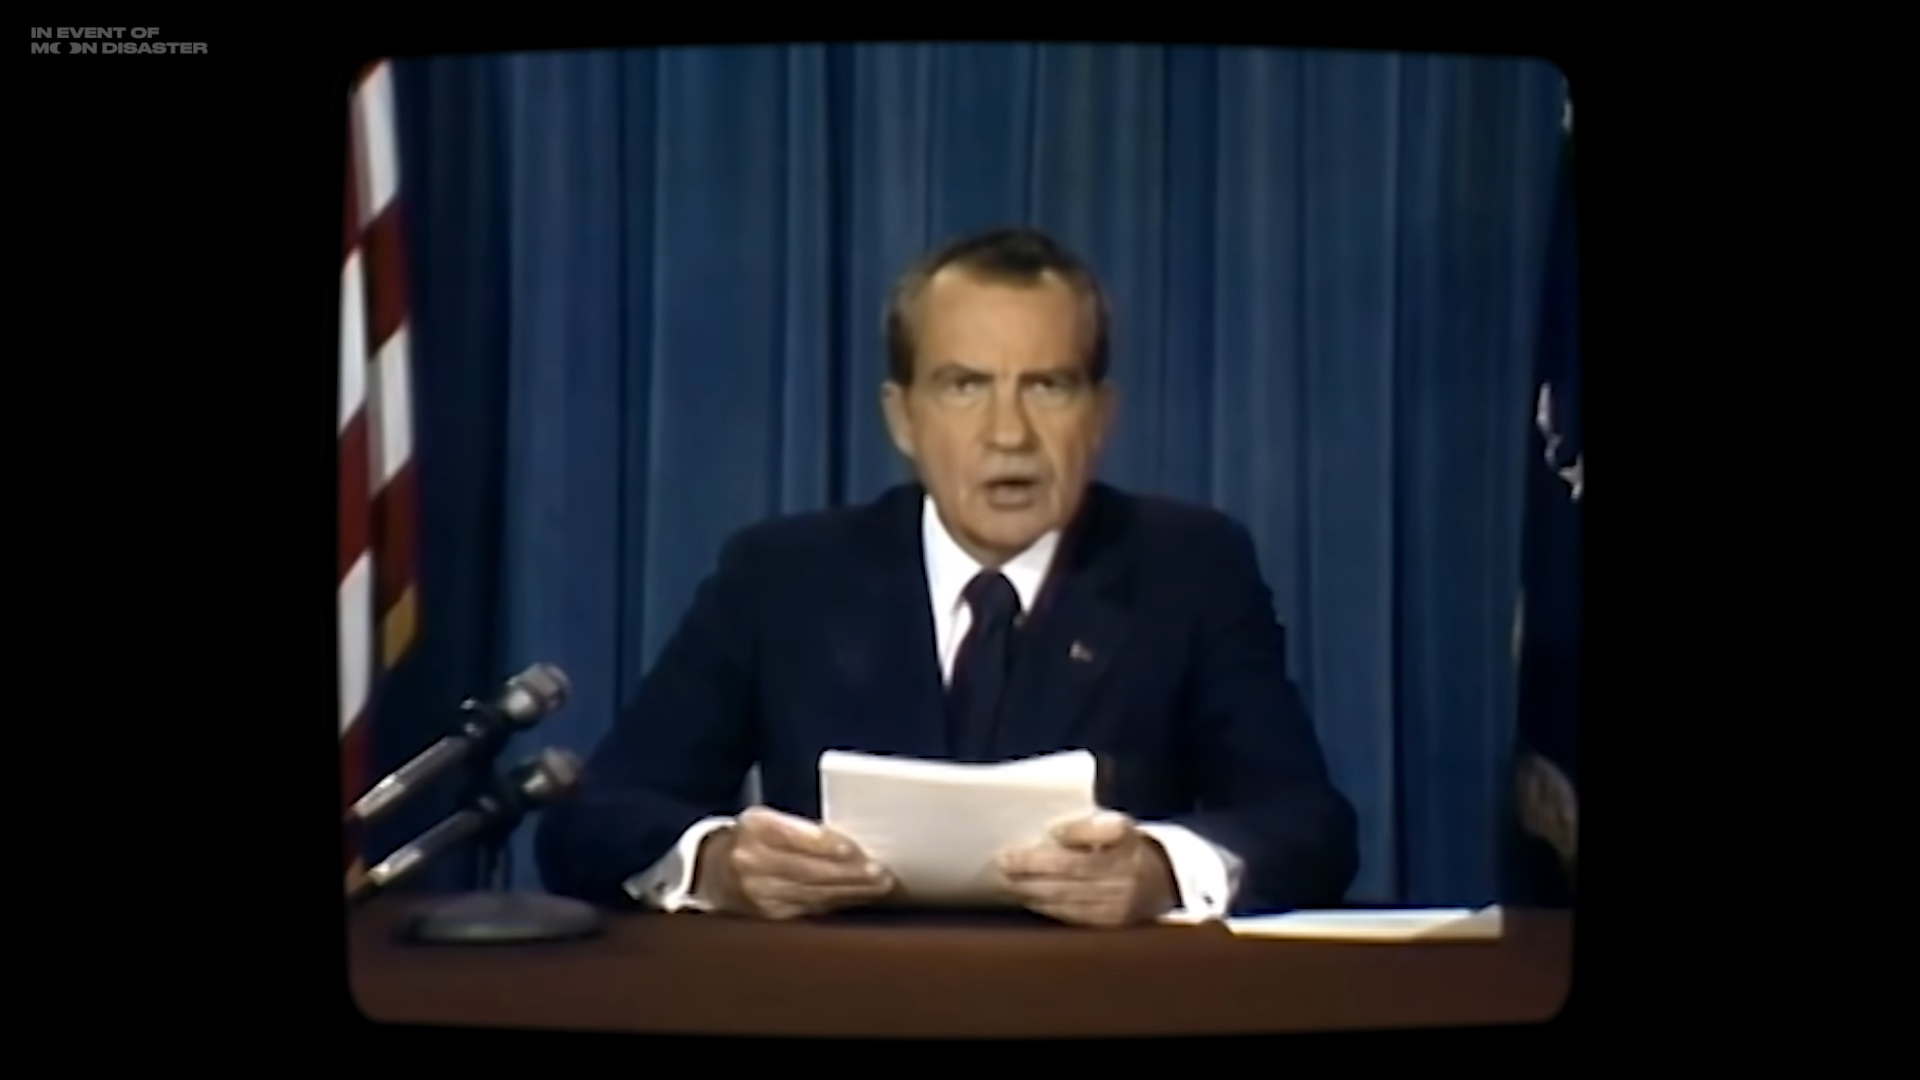 Grâce à l’intelligence artificielle, le président Nixon lit un discours qu’il n’a jamais prononcé en réalité. © Francesca Panetta et Halsey Burgund